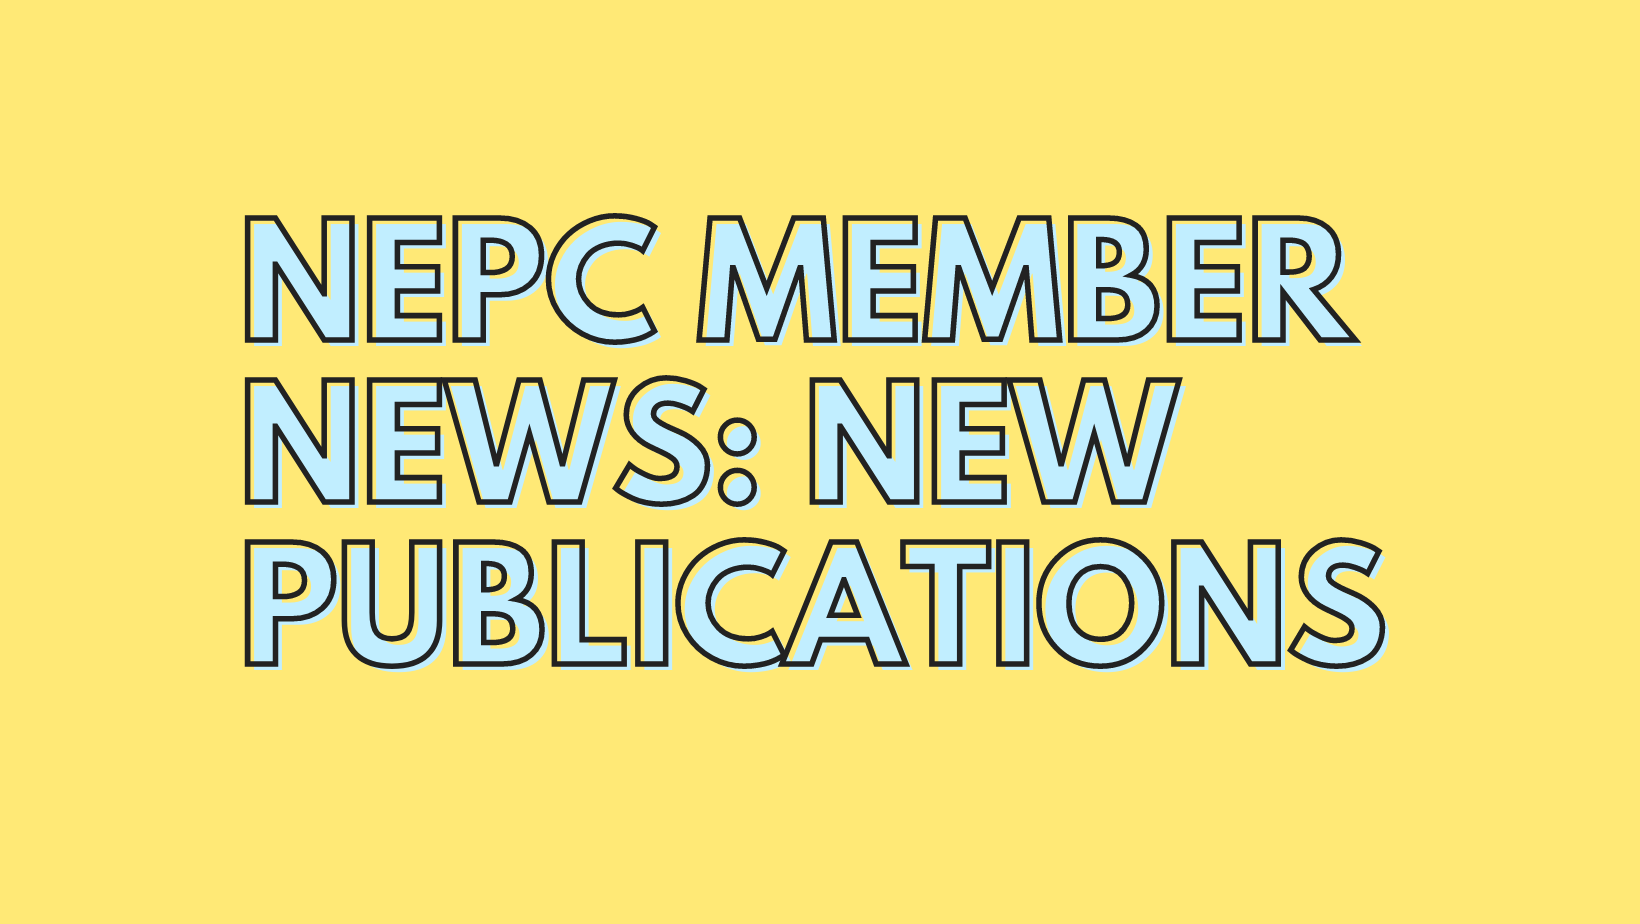 Member Publication News for September